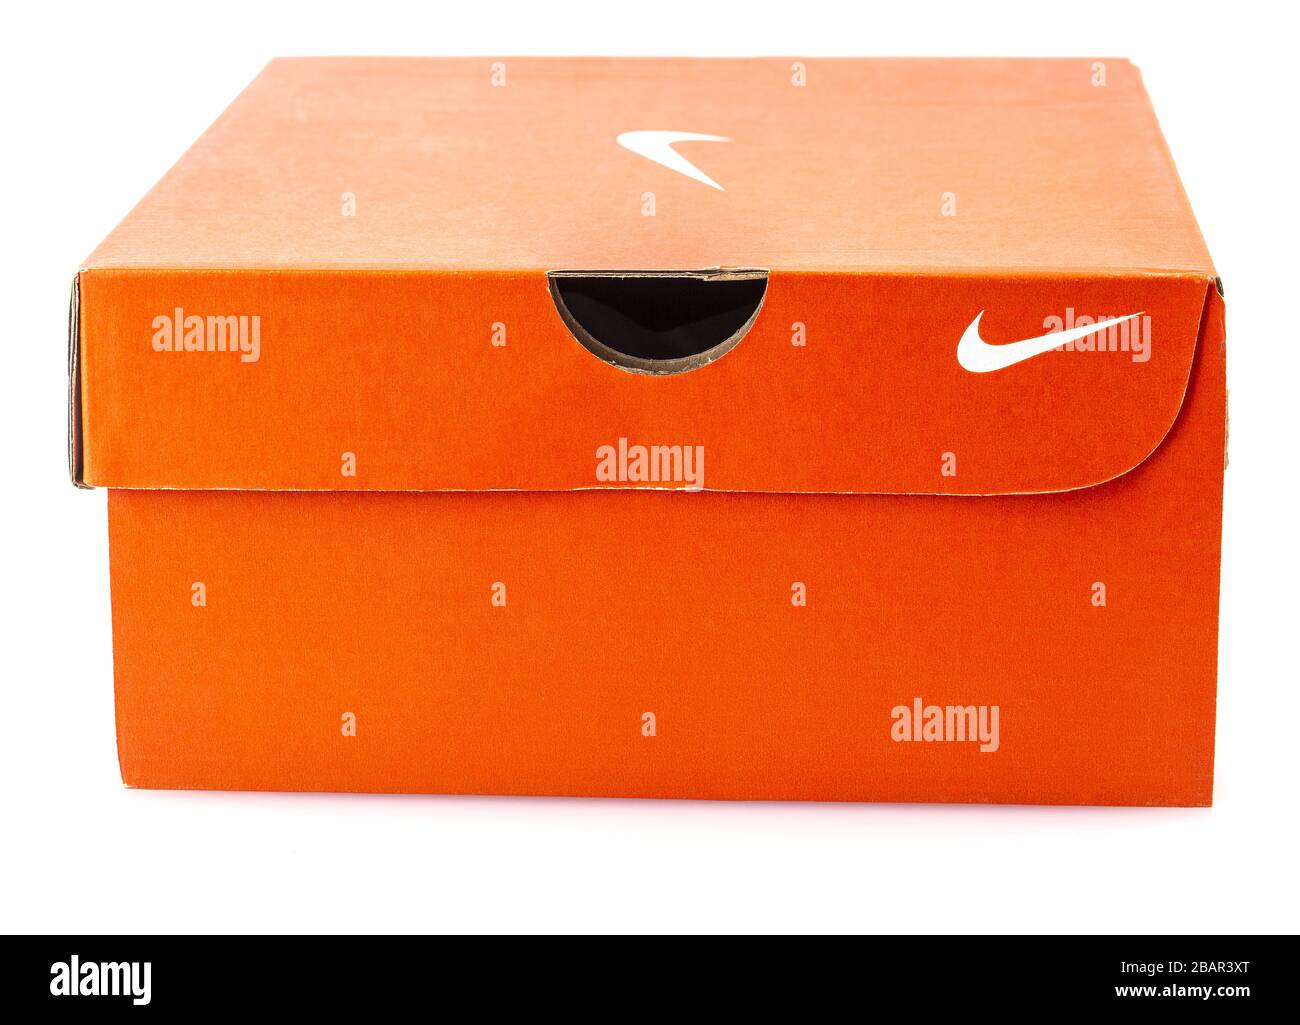 Nike running shoes box with nike logo on orange box in the store : Bangkok  Thailand November 4, 2020 Stock Photo - Alamy